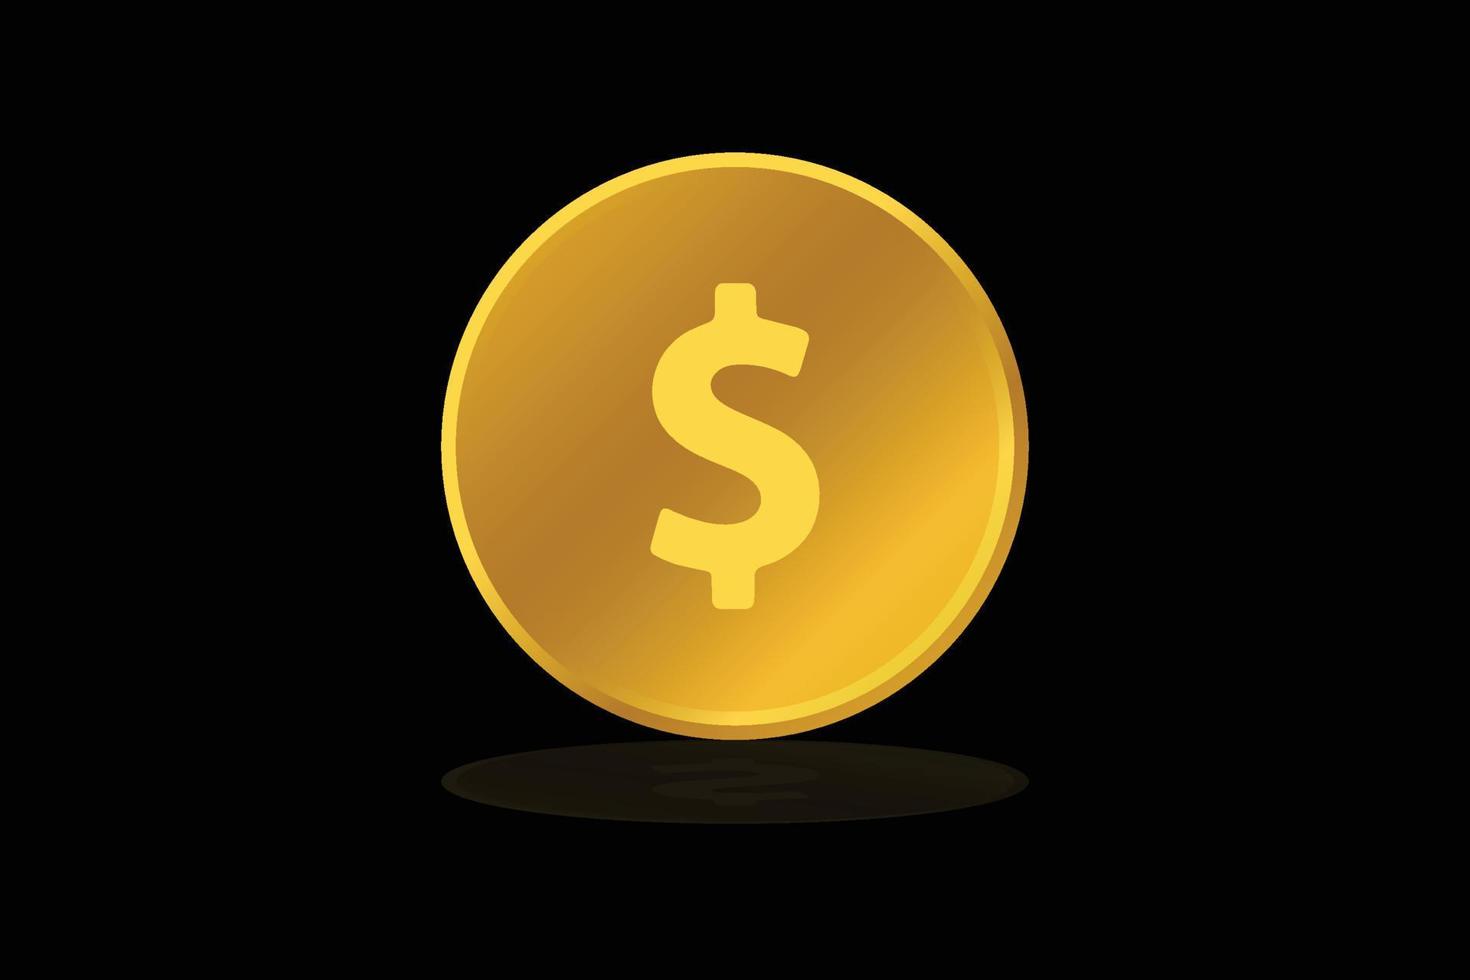 Gold Münze Dollar uns Währung Geld Symbol Zeichen oder Symbol vektor